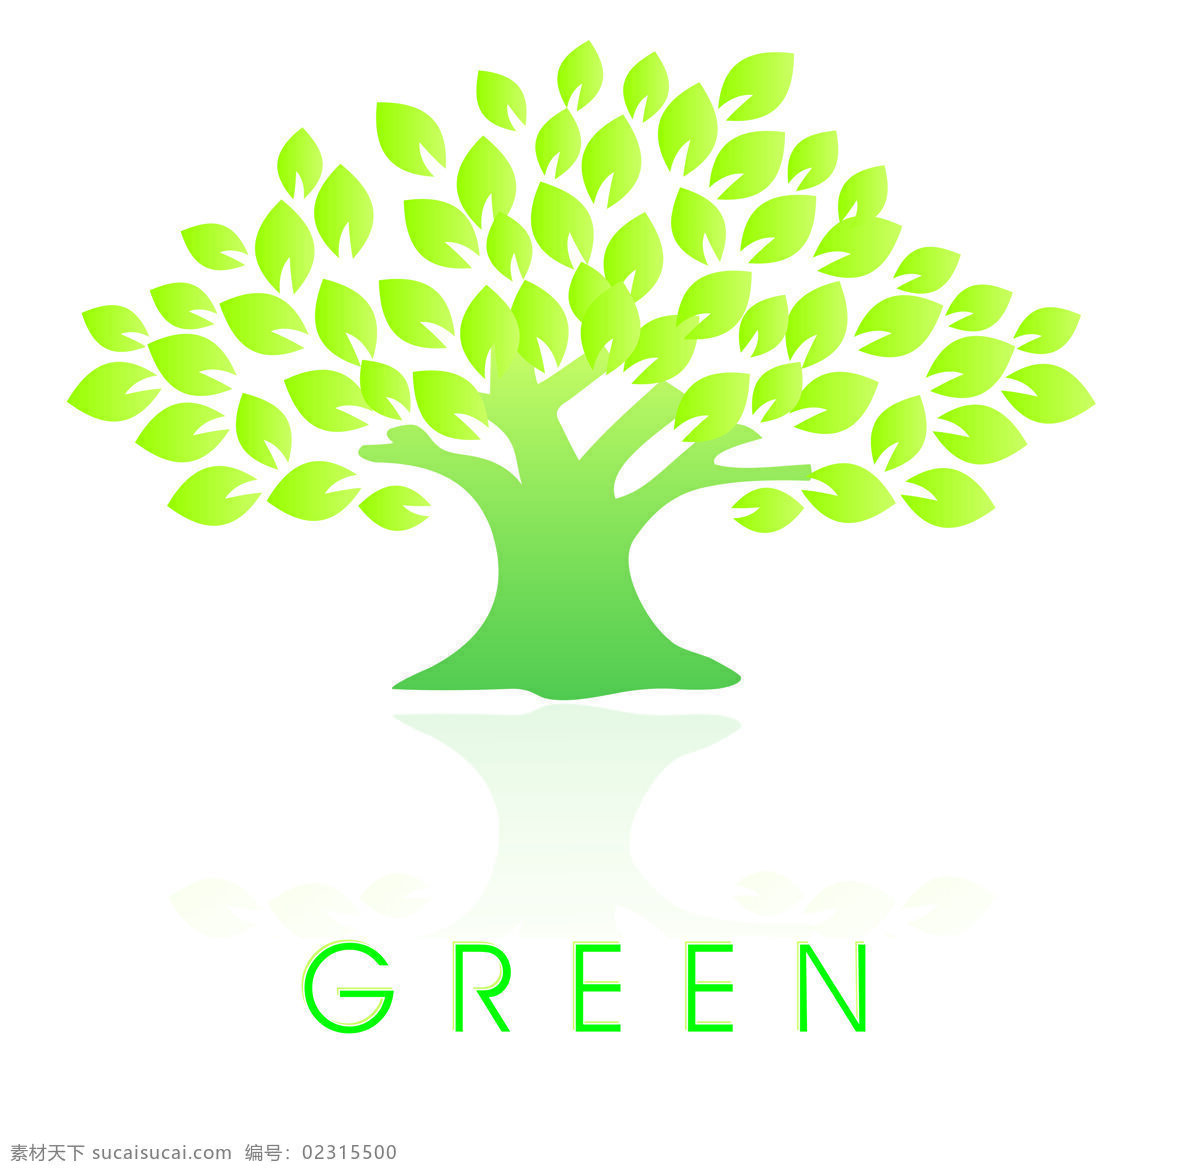 绿色环保标识 树叶 绿色 green 阴影 繁茂 logo设计